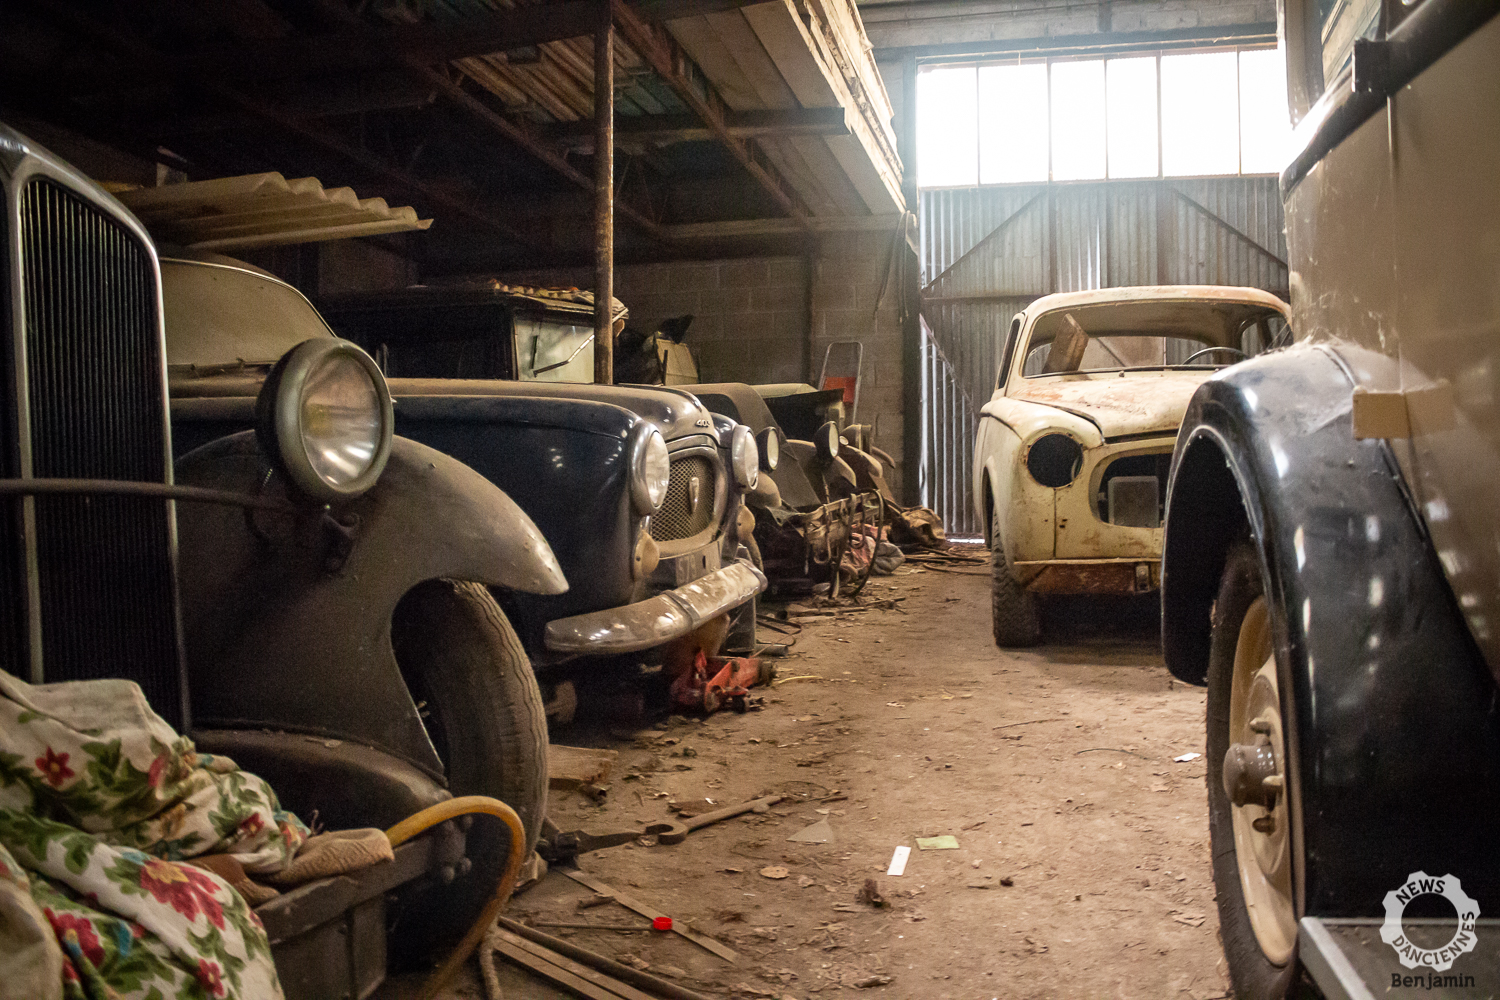 Une fabuleuse collection de voitures retrouvée dans une grange dans les  Deux-Sèvres